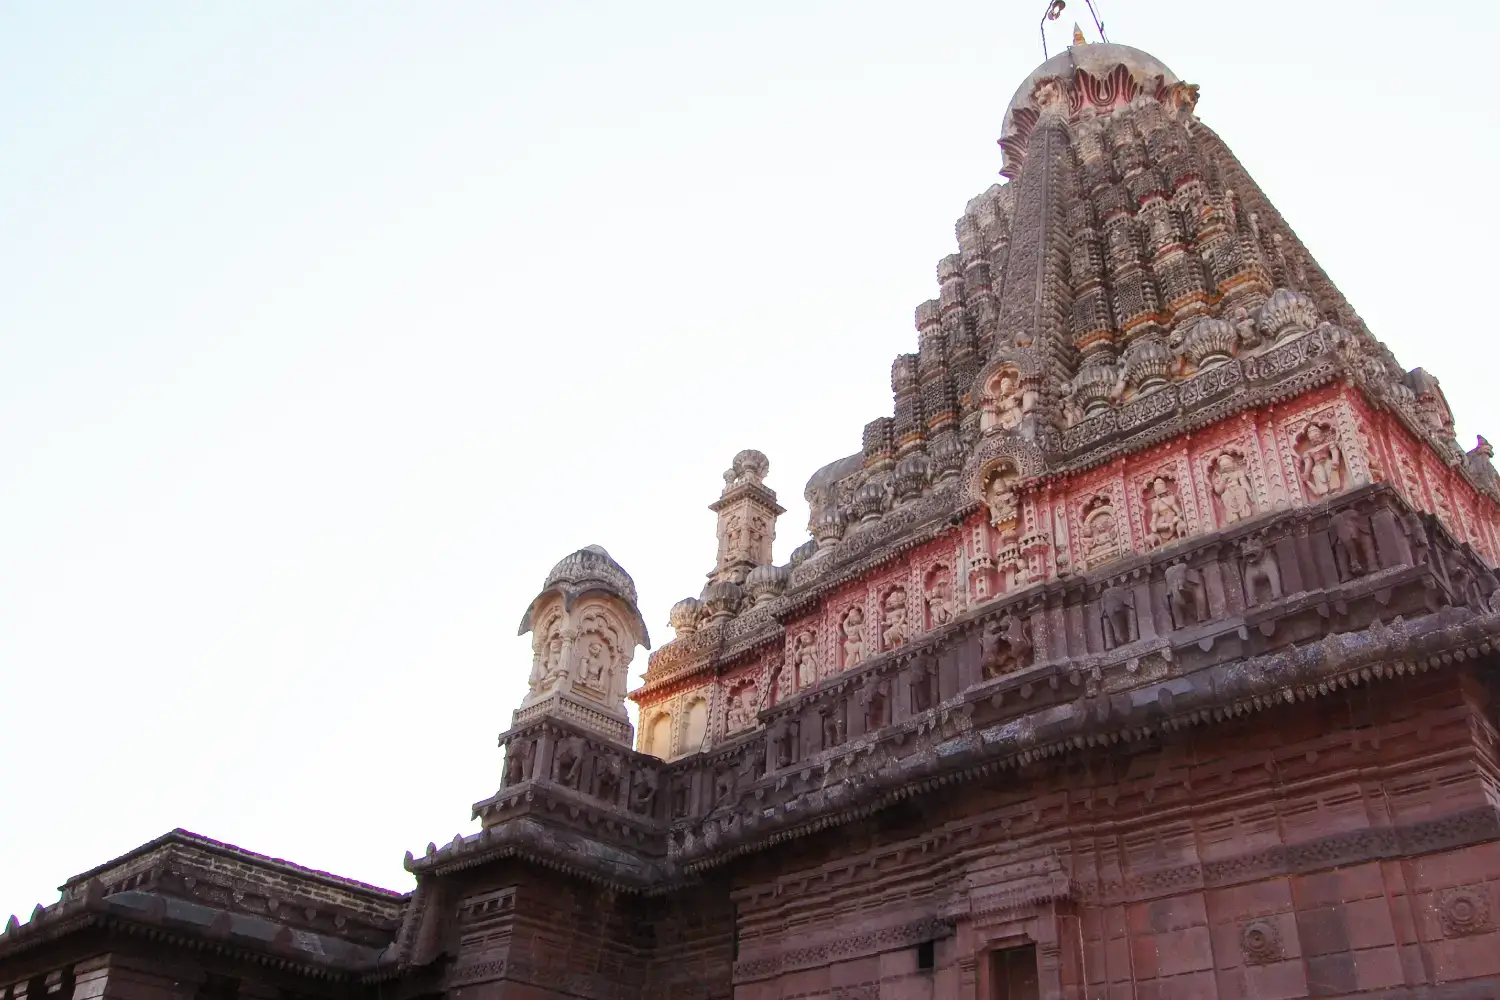 Grishneshwar Jyotirlinga Temple, Maharashtra